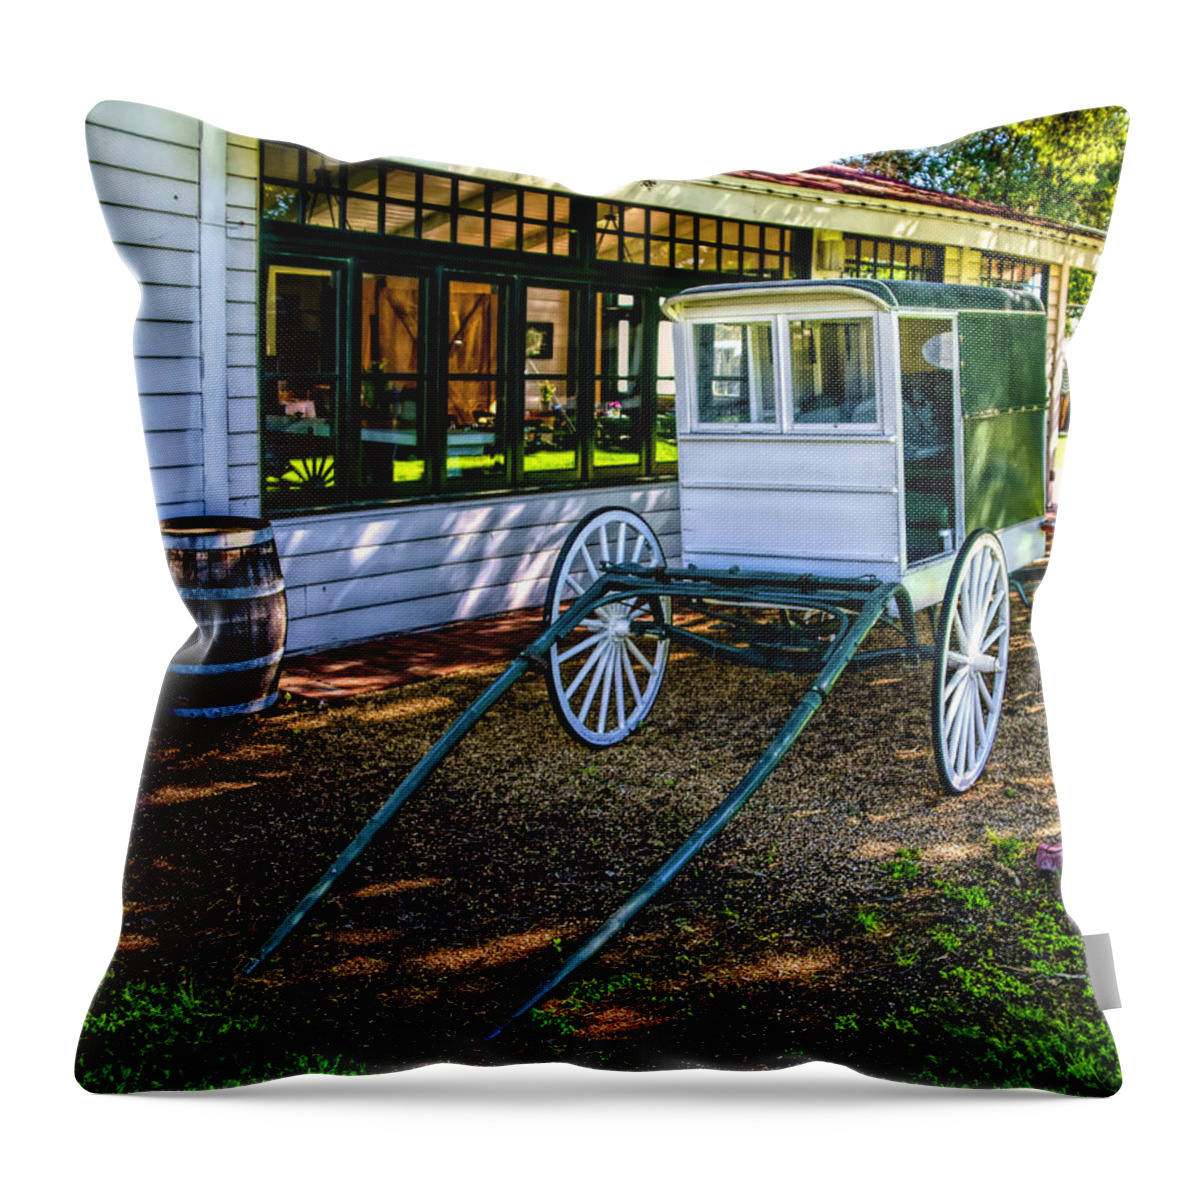 Mattei's Tavern Milk Wagon Throw Pillow featuring the photograph Mattei's Tavern Milk Wagon by Floyd Snyder